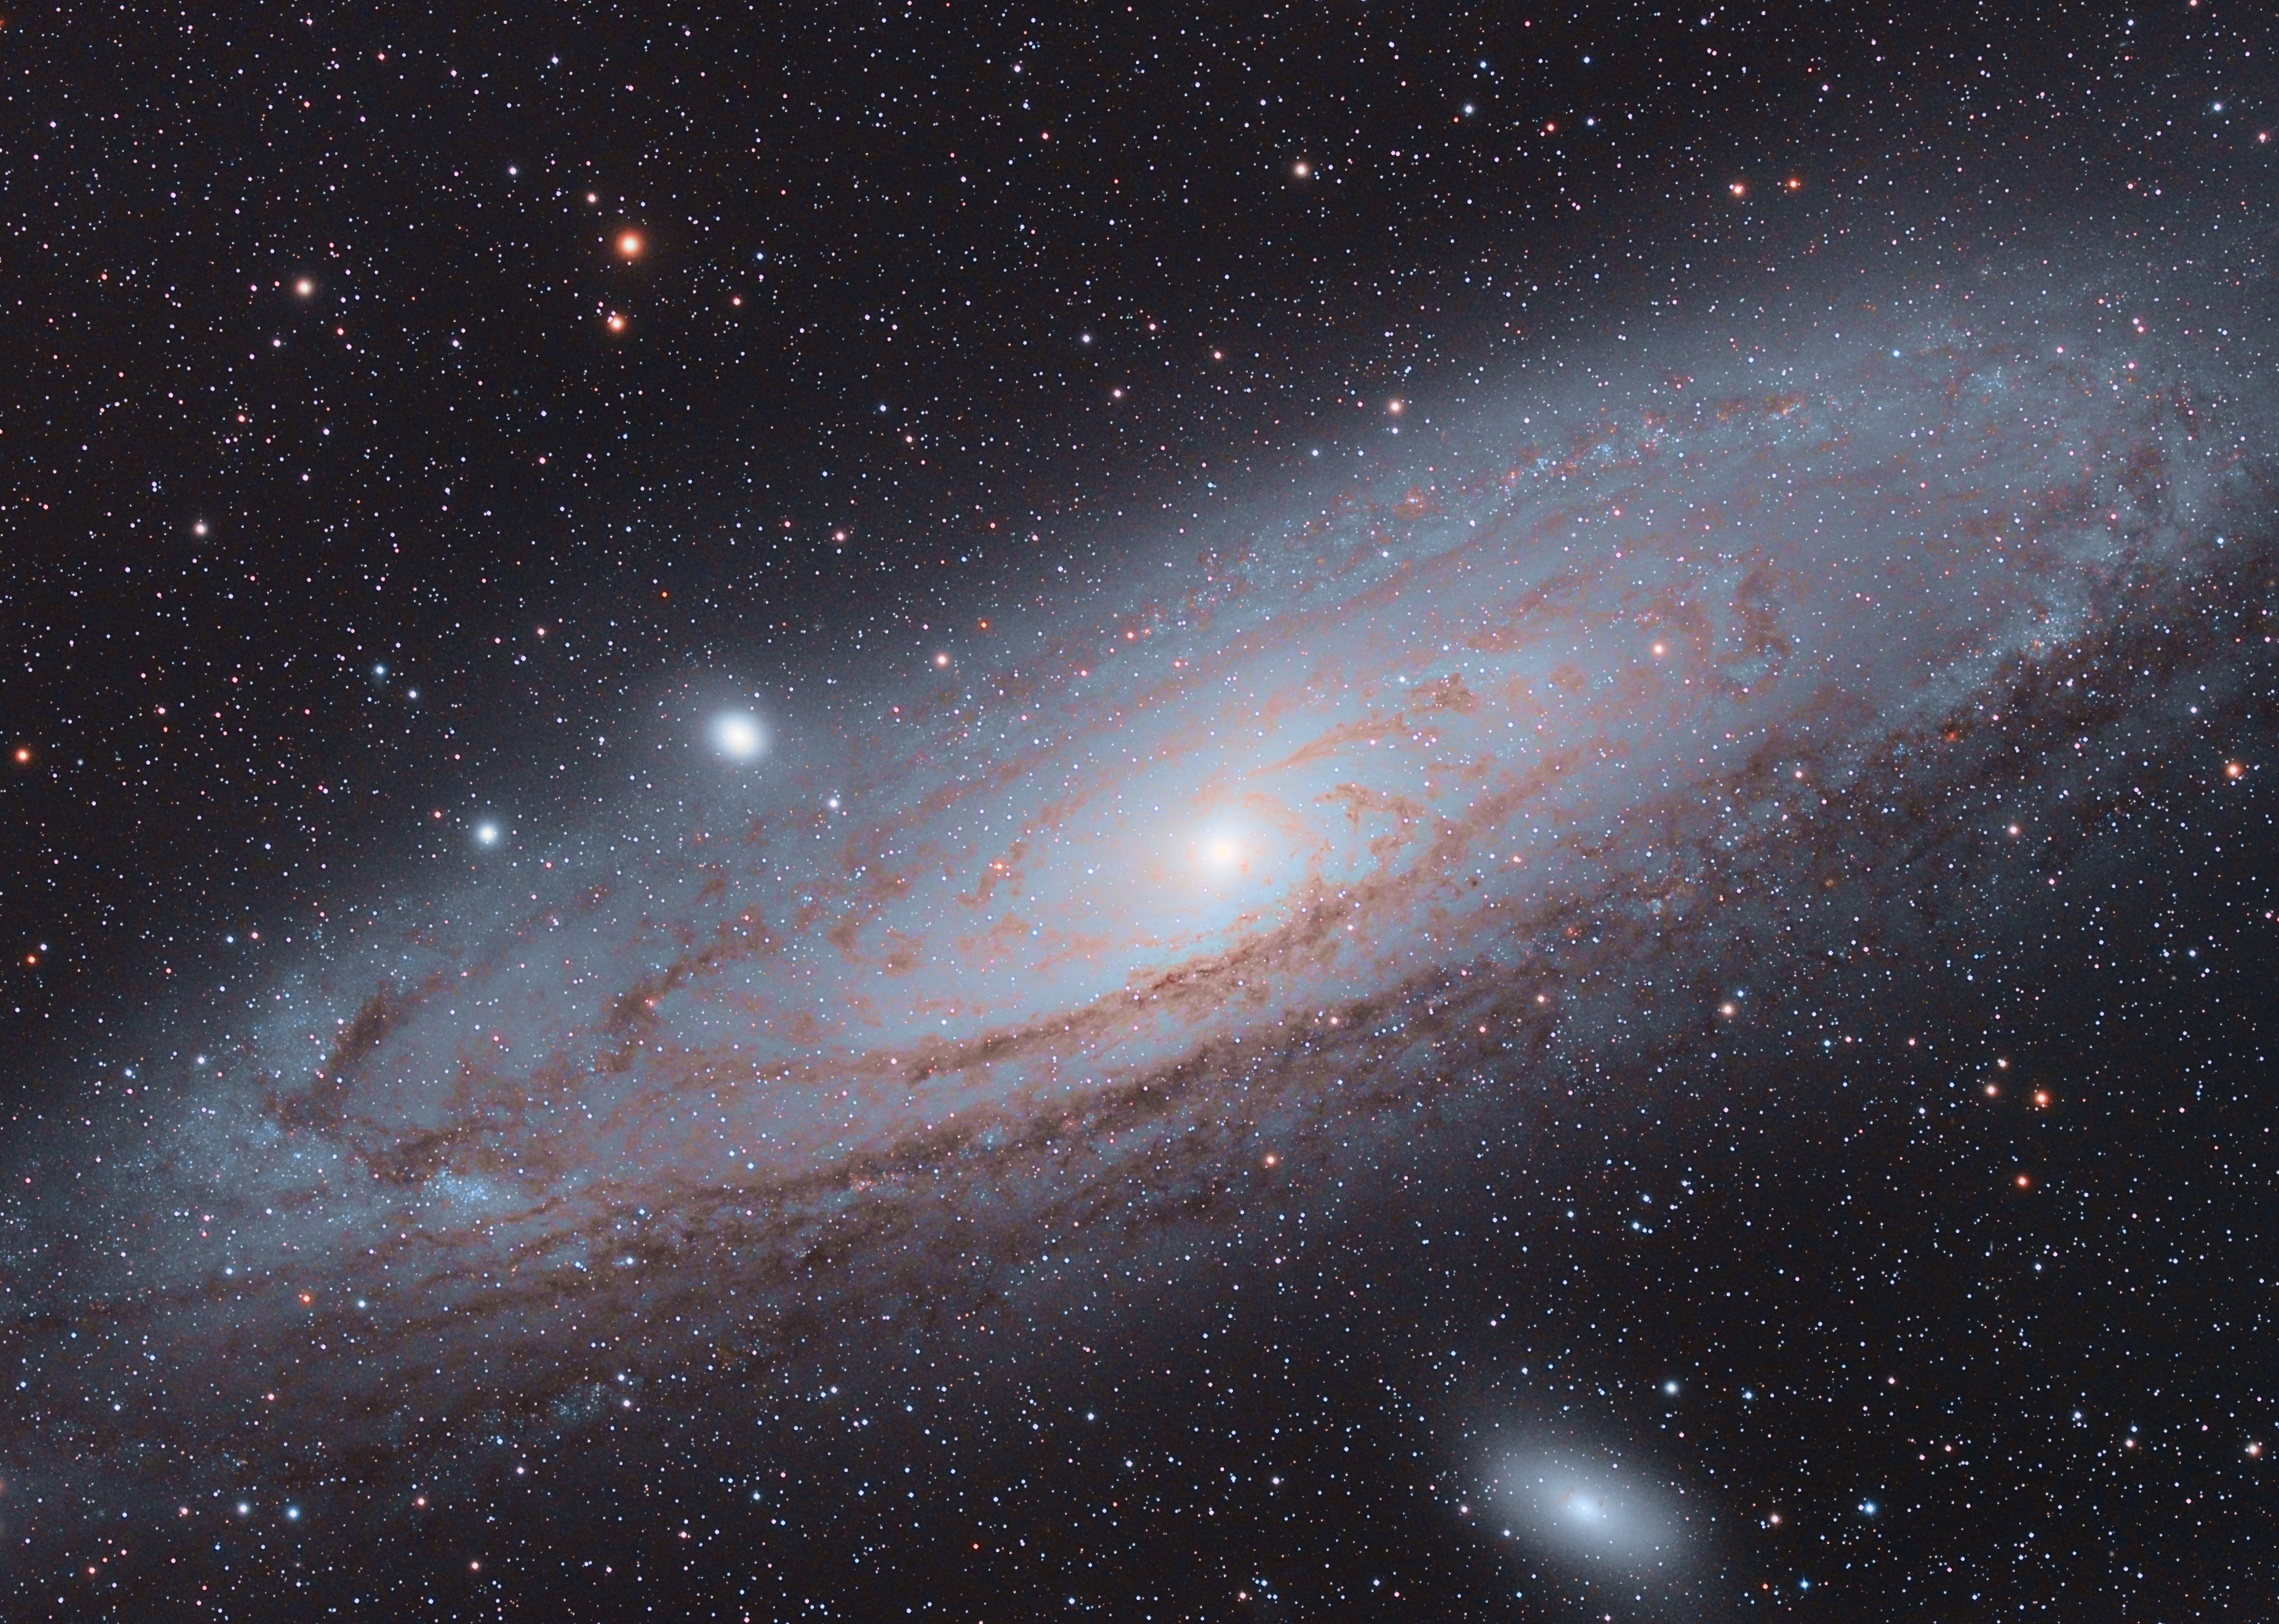 Andromeda Galaxy M31